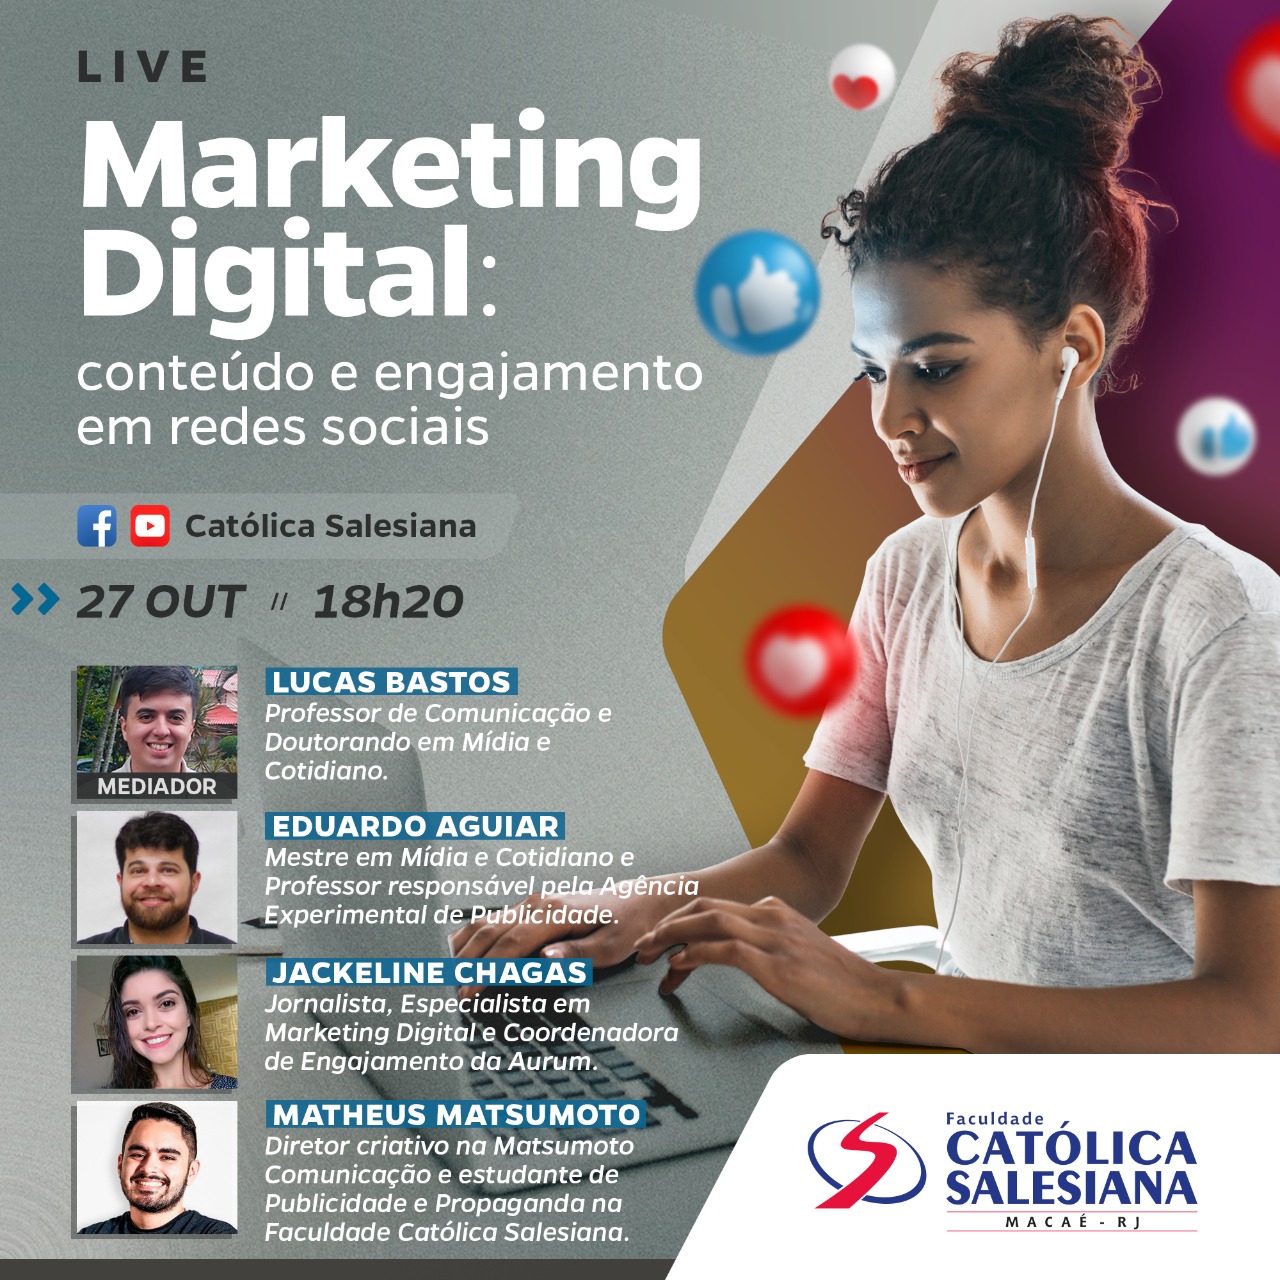 Católica Salesiana vai realizar Live sobre Marketing Digital